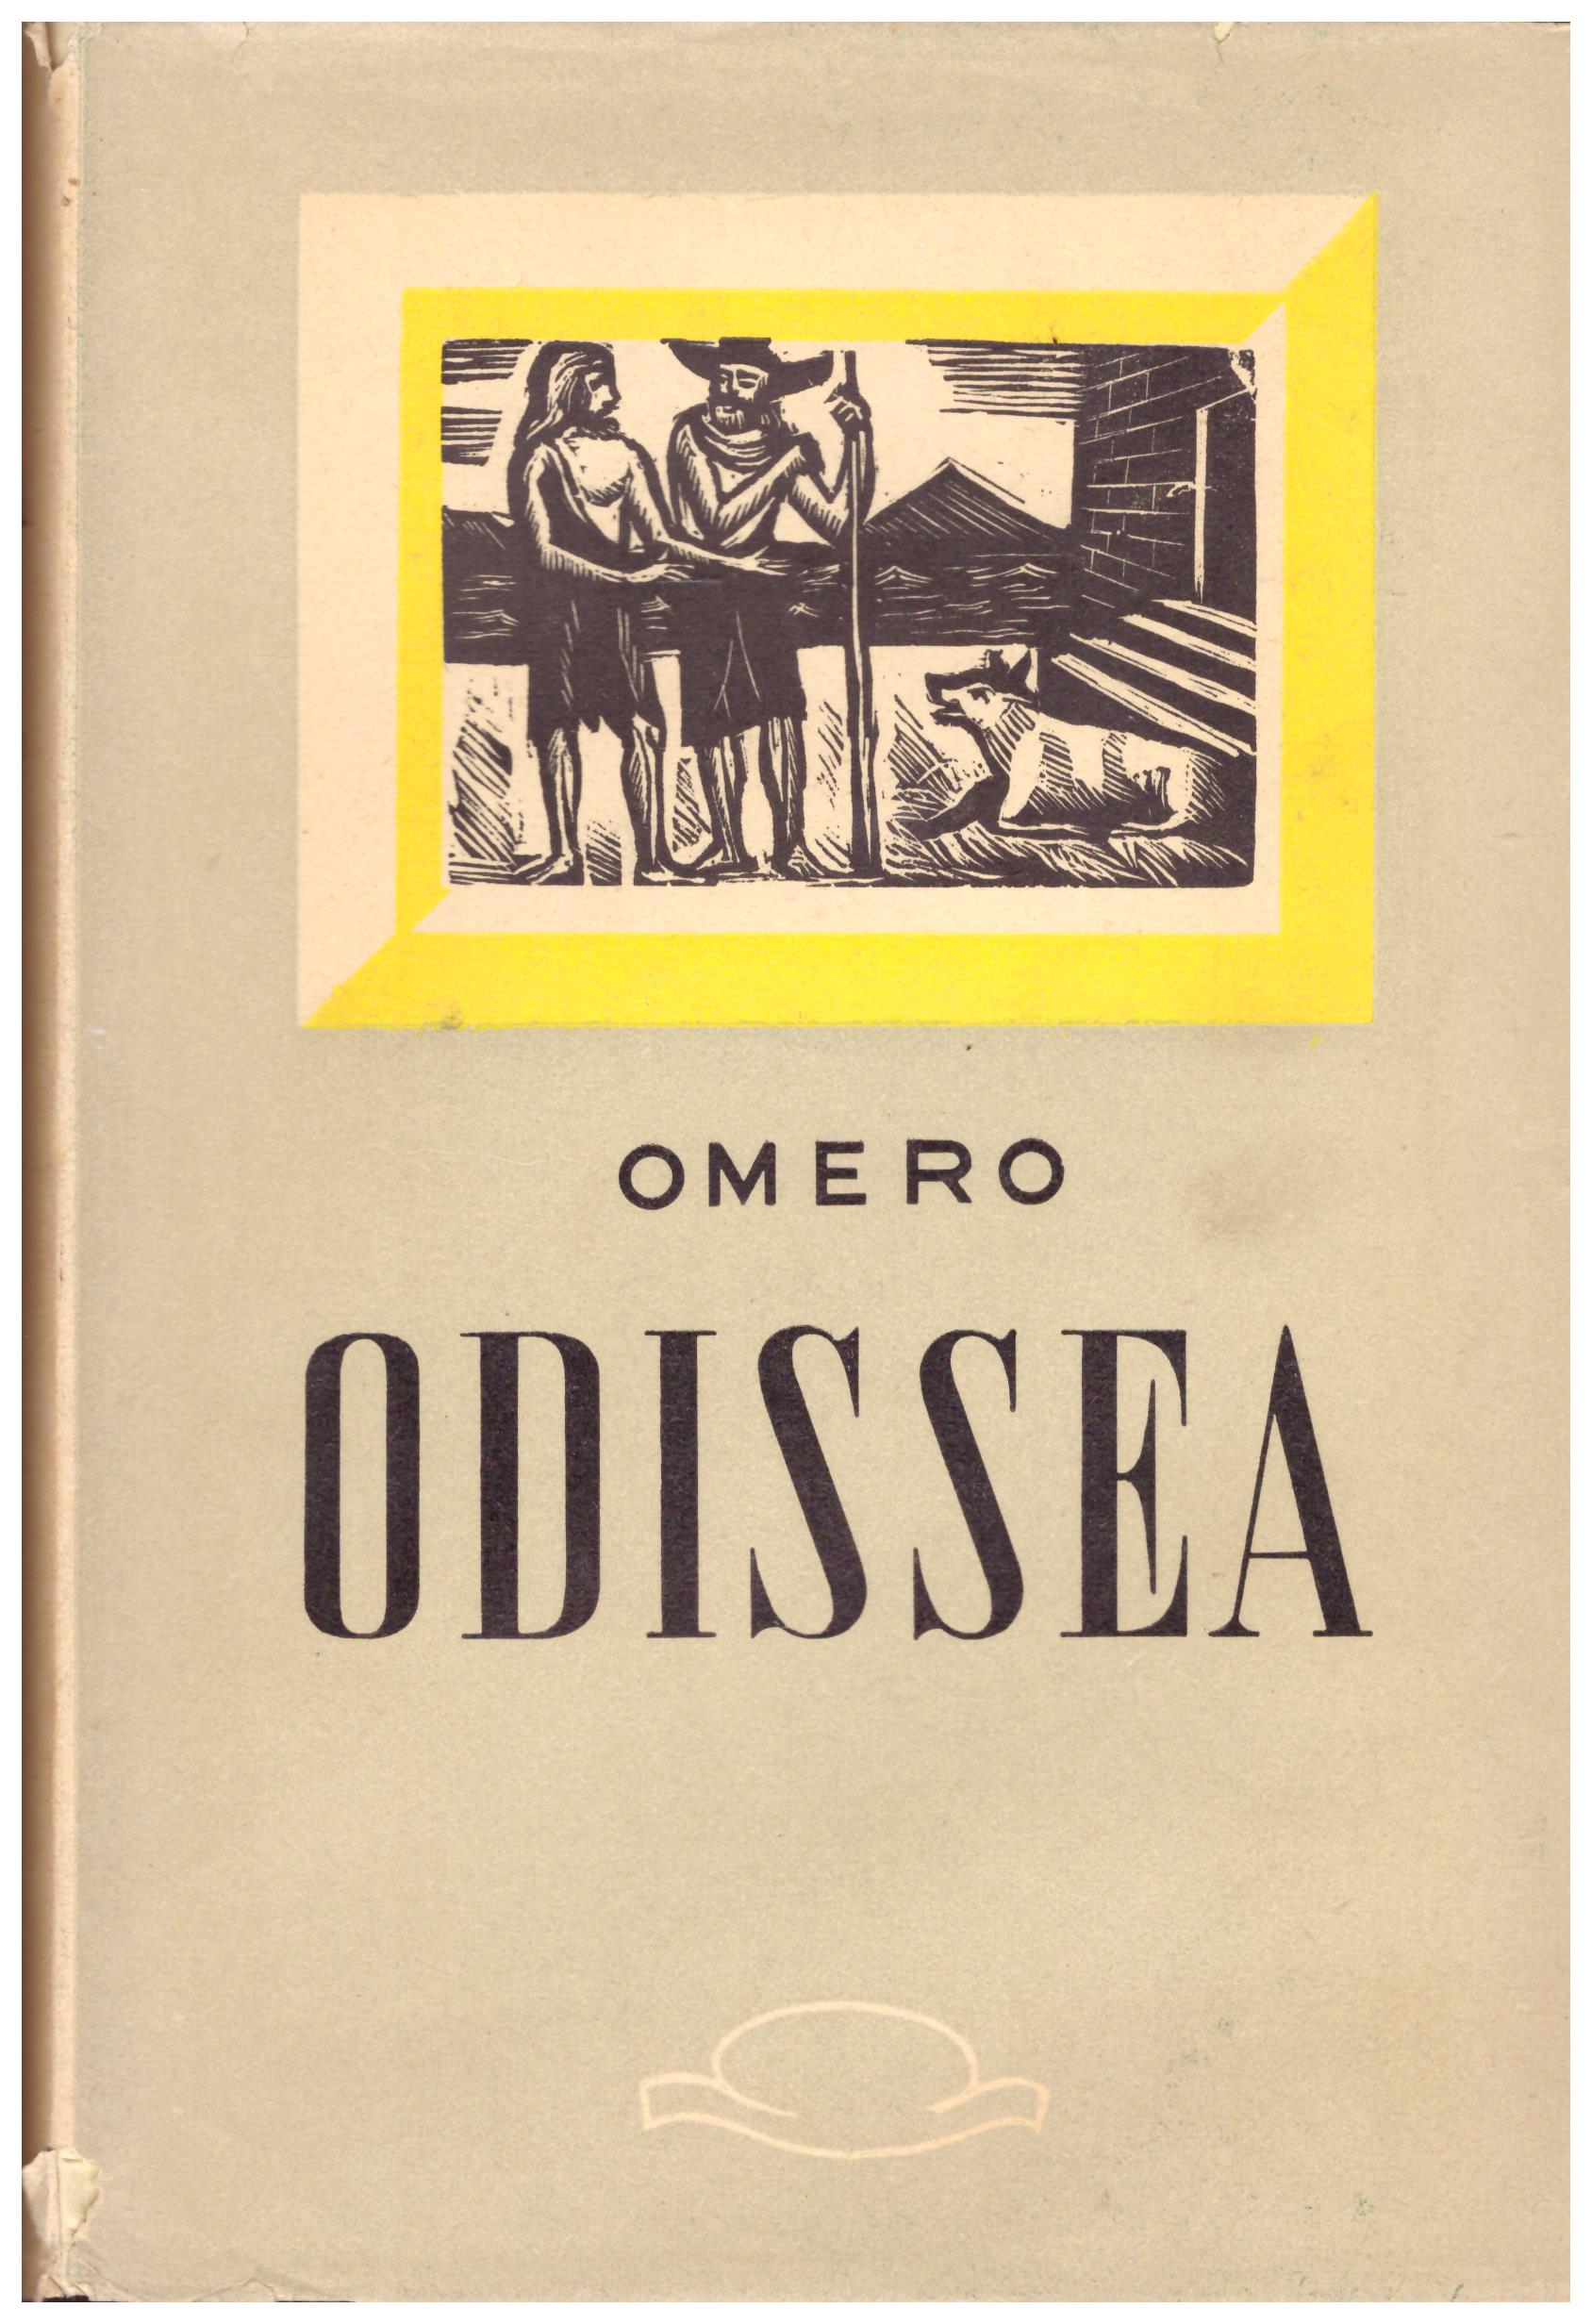 Titolo: Odissea    Autore: Omero, traduzione di Ippolito Pindemonte      Editore: Libreria editrice fiorentina